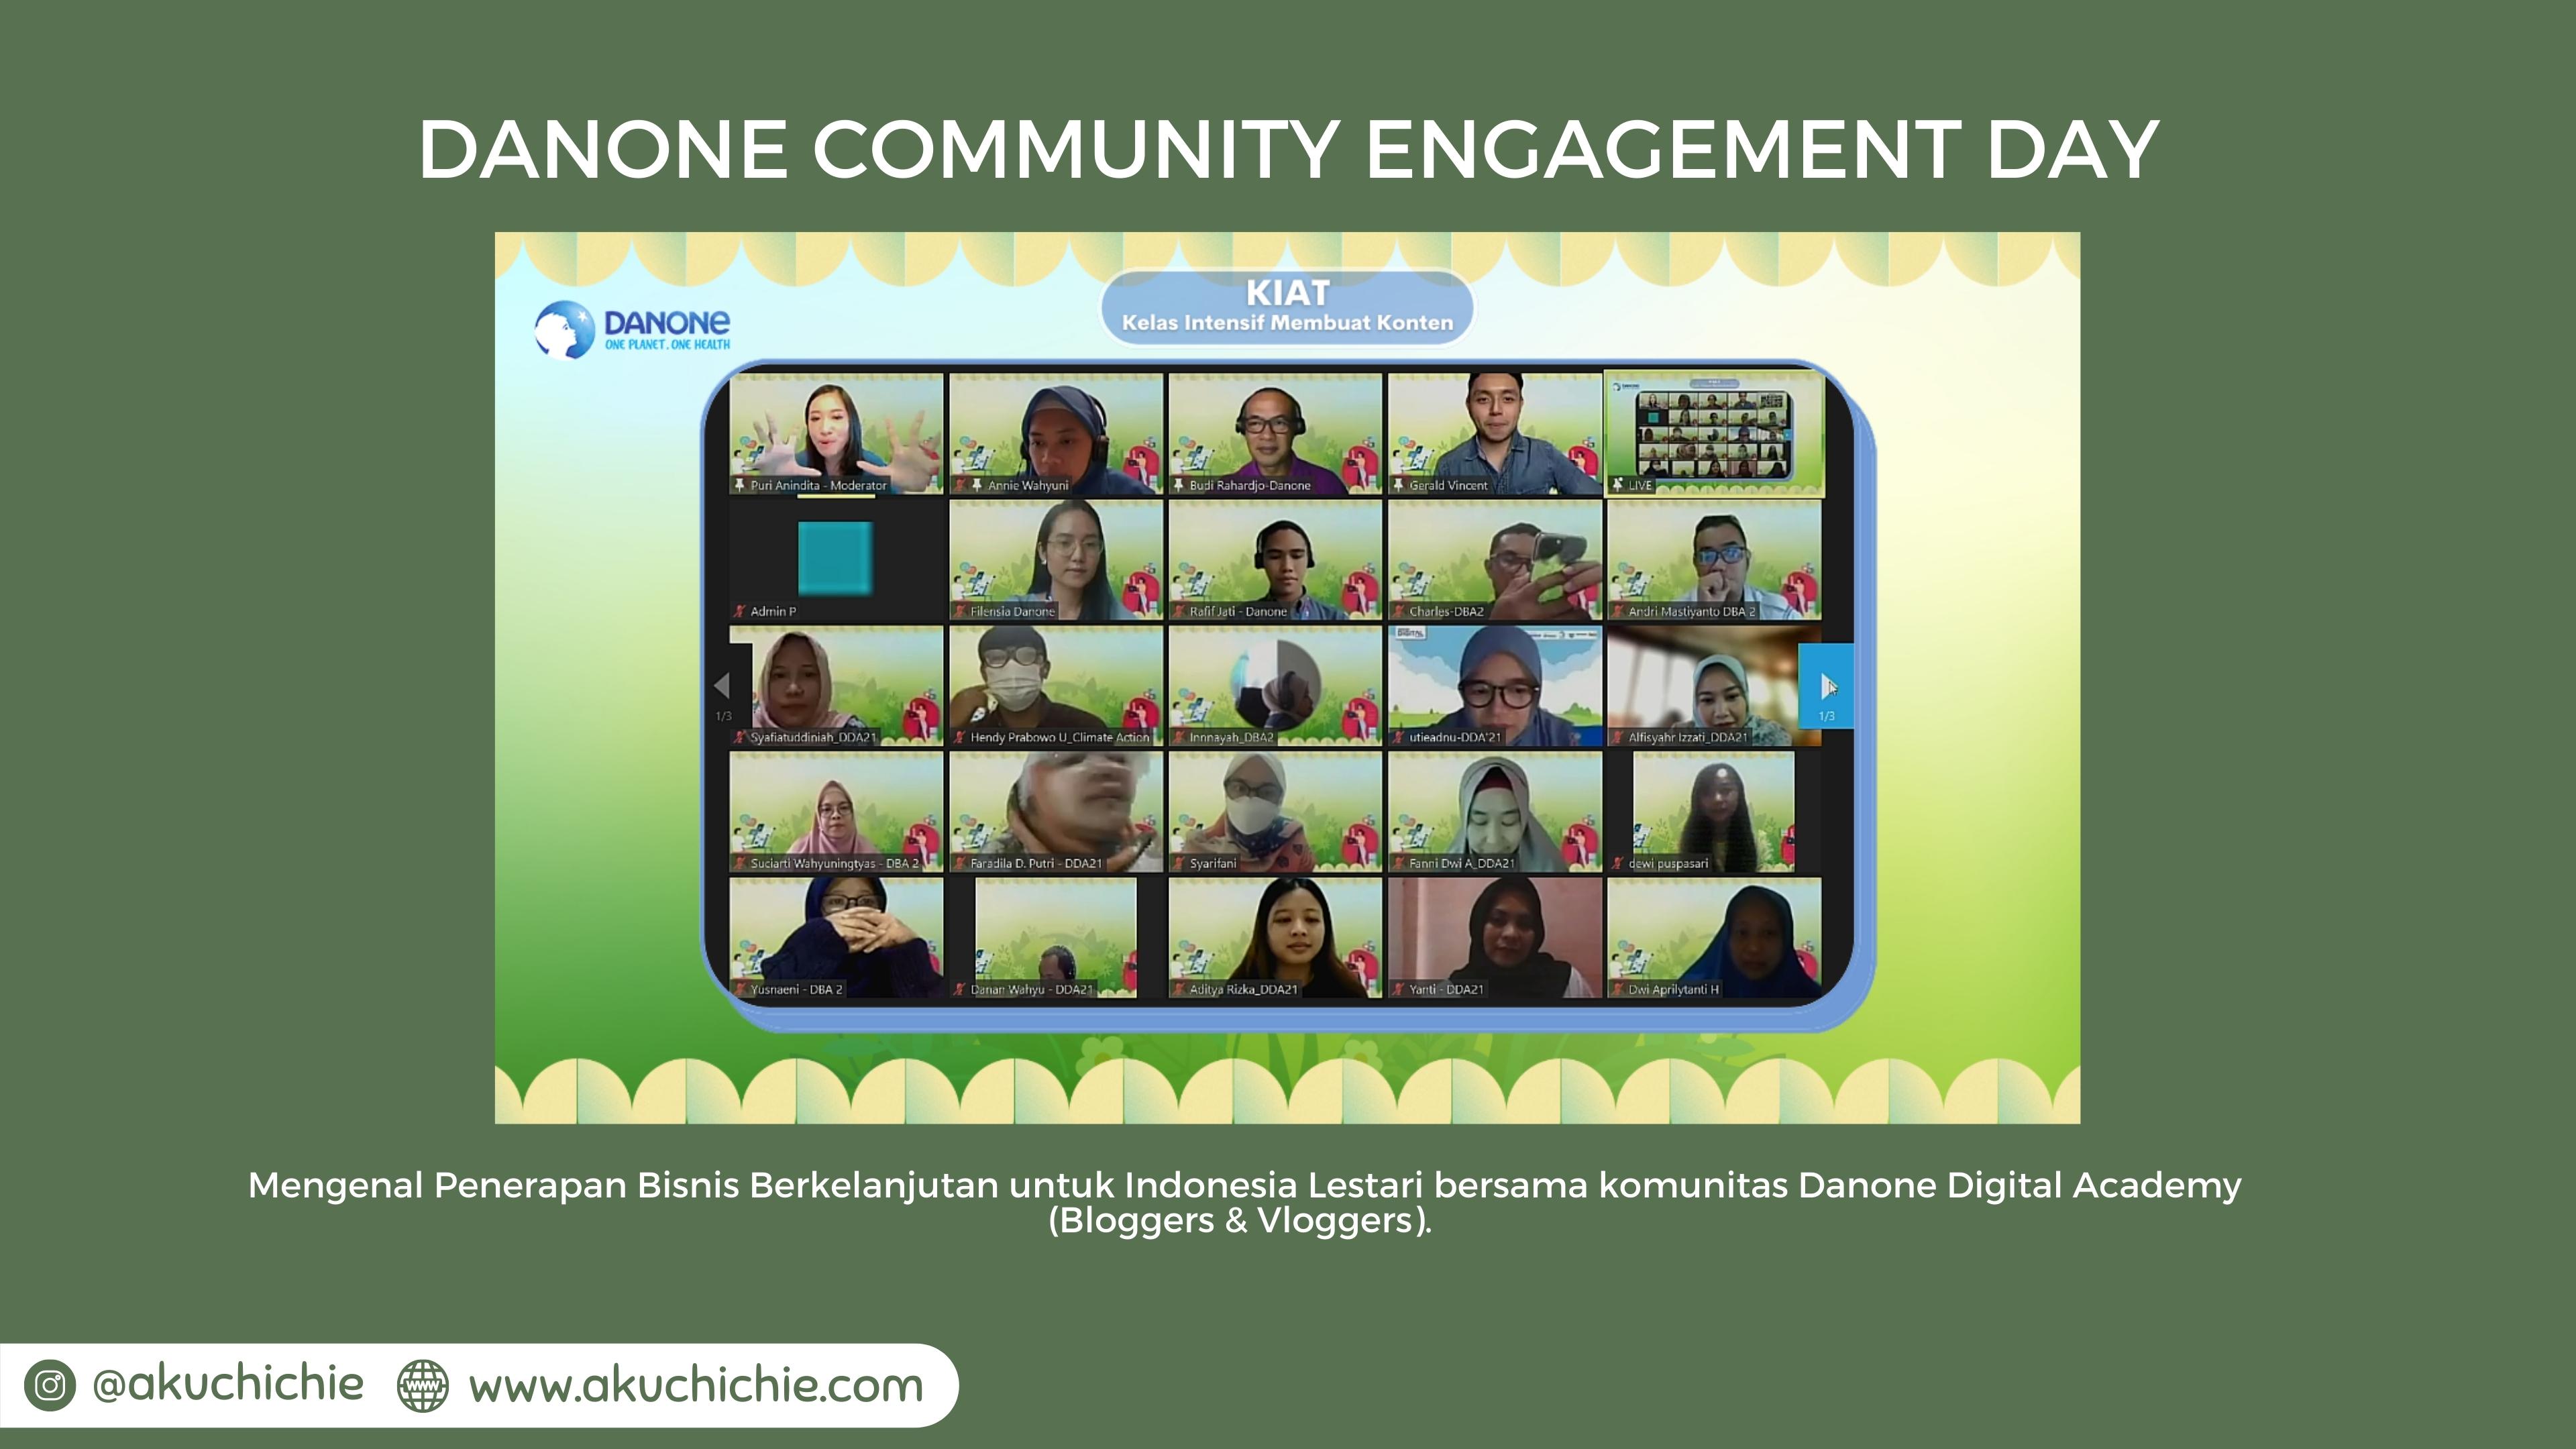 Danone Community Engagement Day